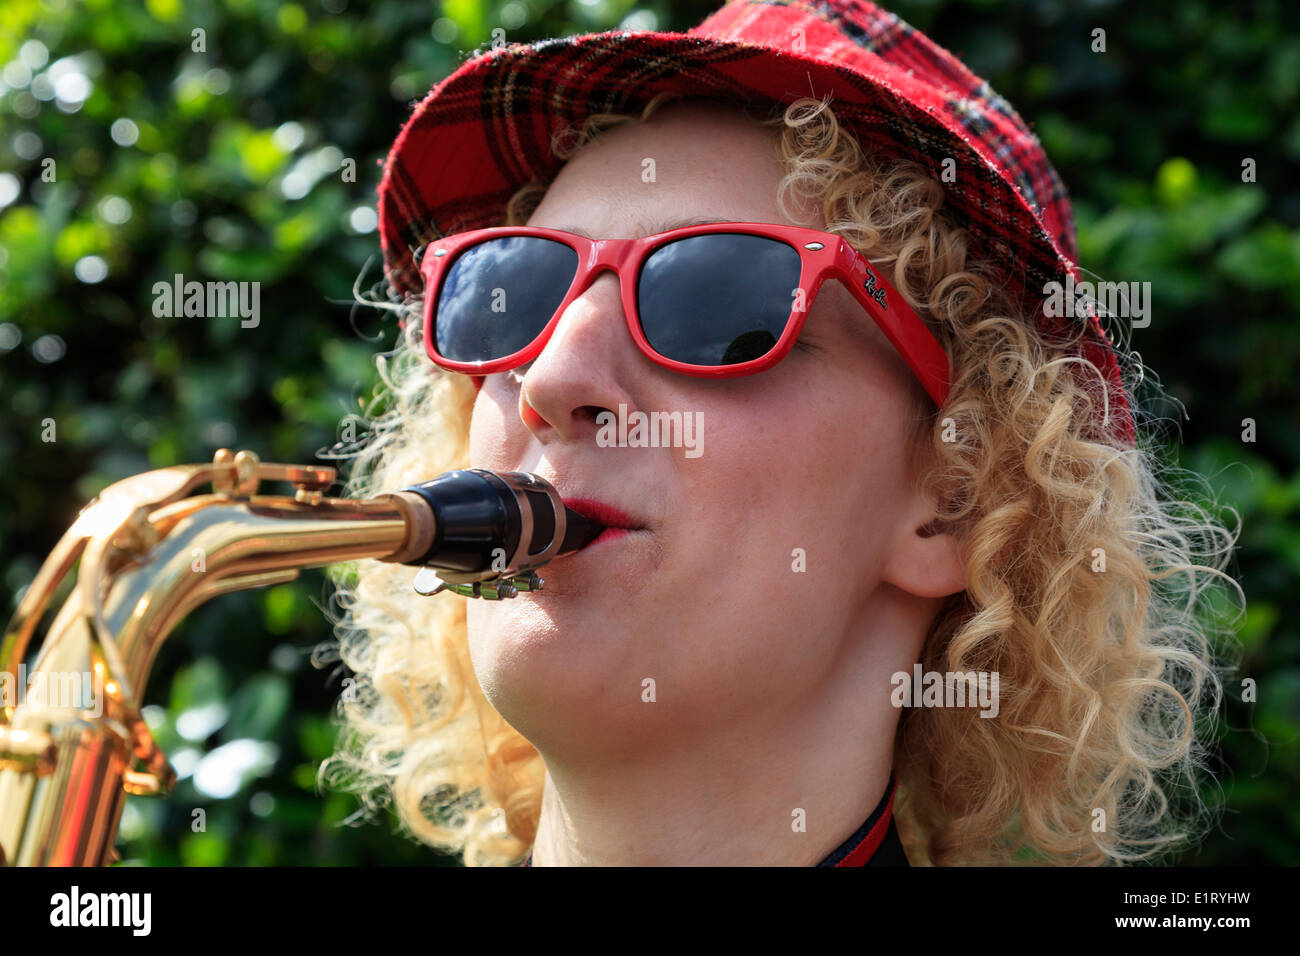 Femme portant un tartan Hat et Red Ray Ban lunettes jouer du saxophone à l'extrémité ouest Street Festival, Glasgow, Écosse, Royaume-Uni Banque D'Images